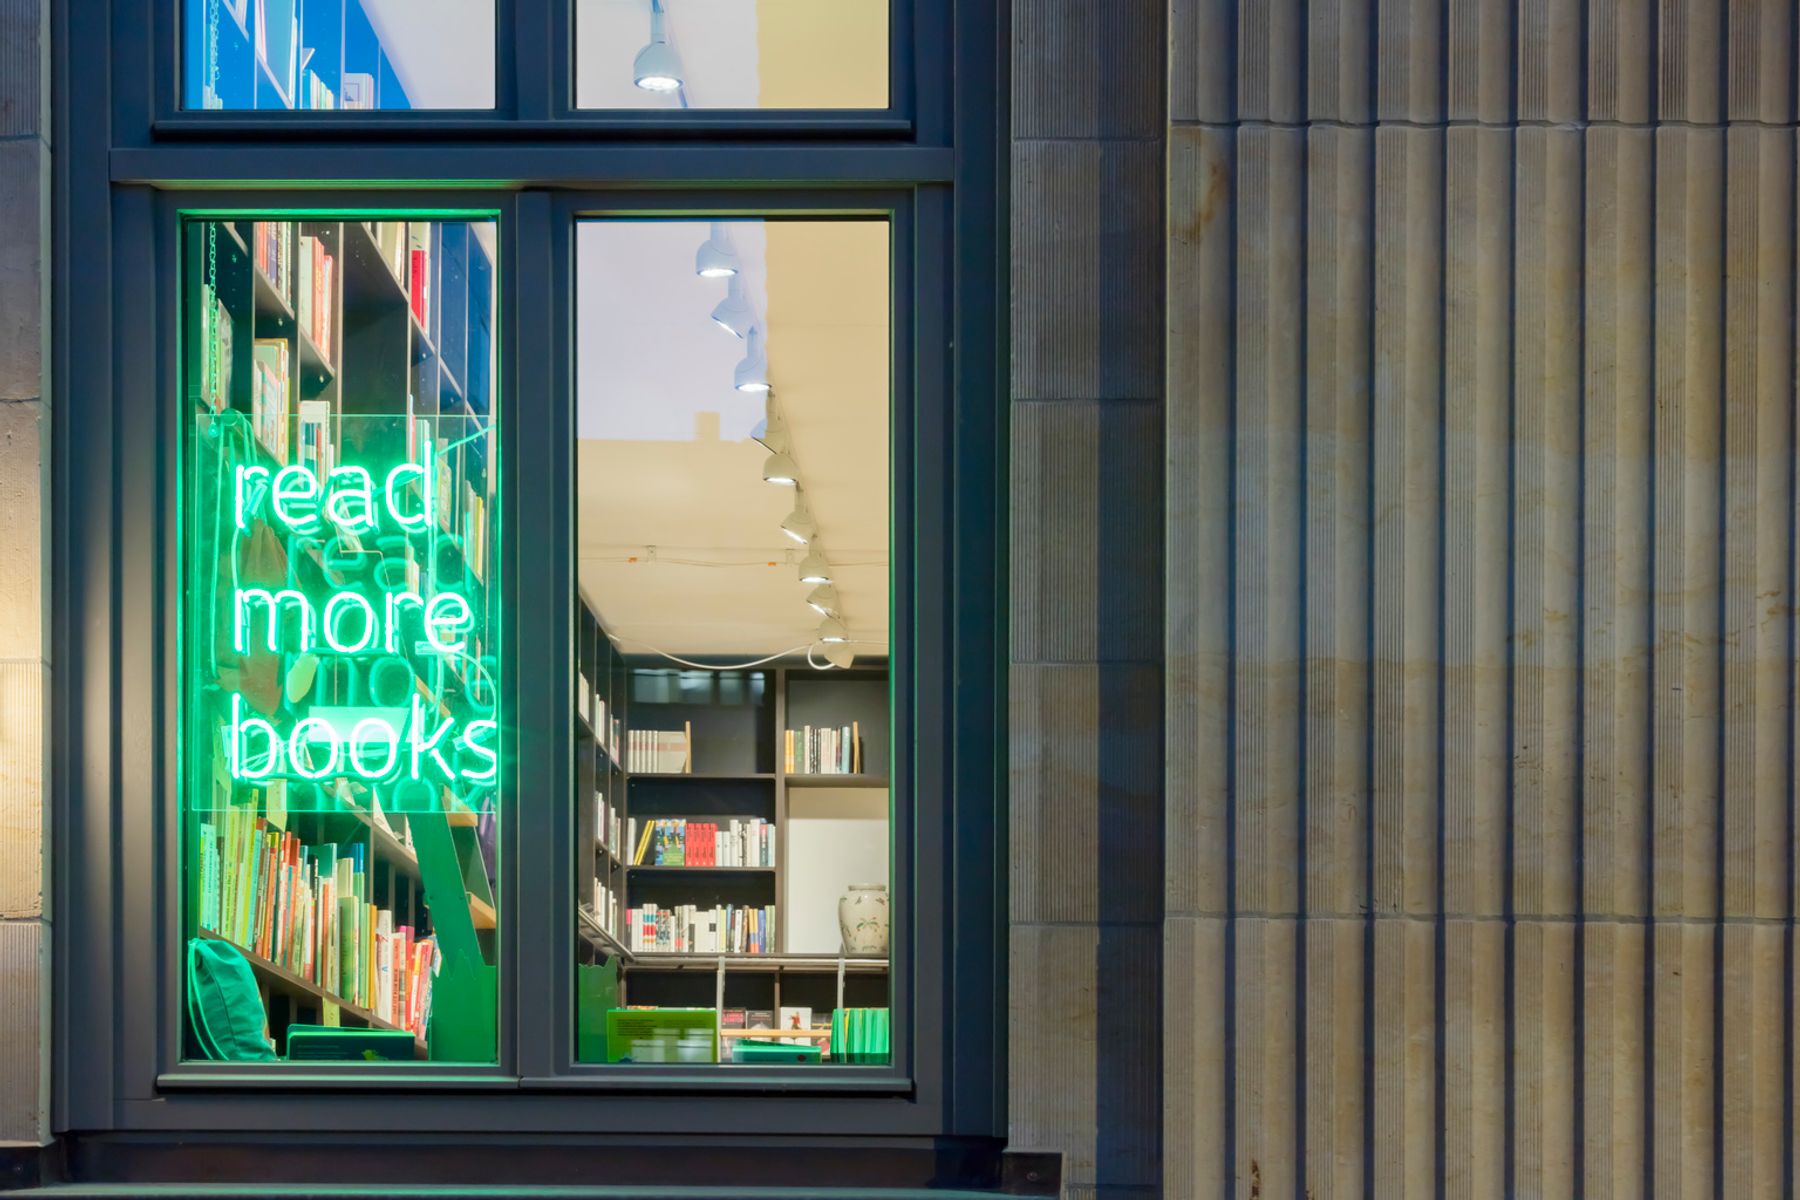 Sala de lectura, librería y café, Hamburgo. Fotografía: Frieder Blickle, Hamburgo.